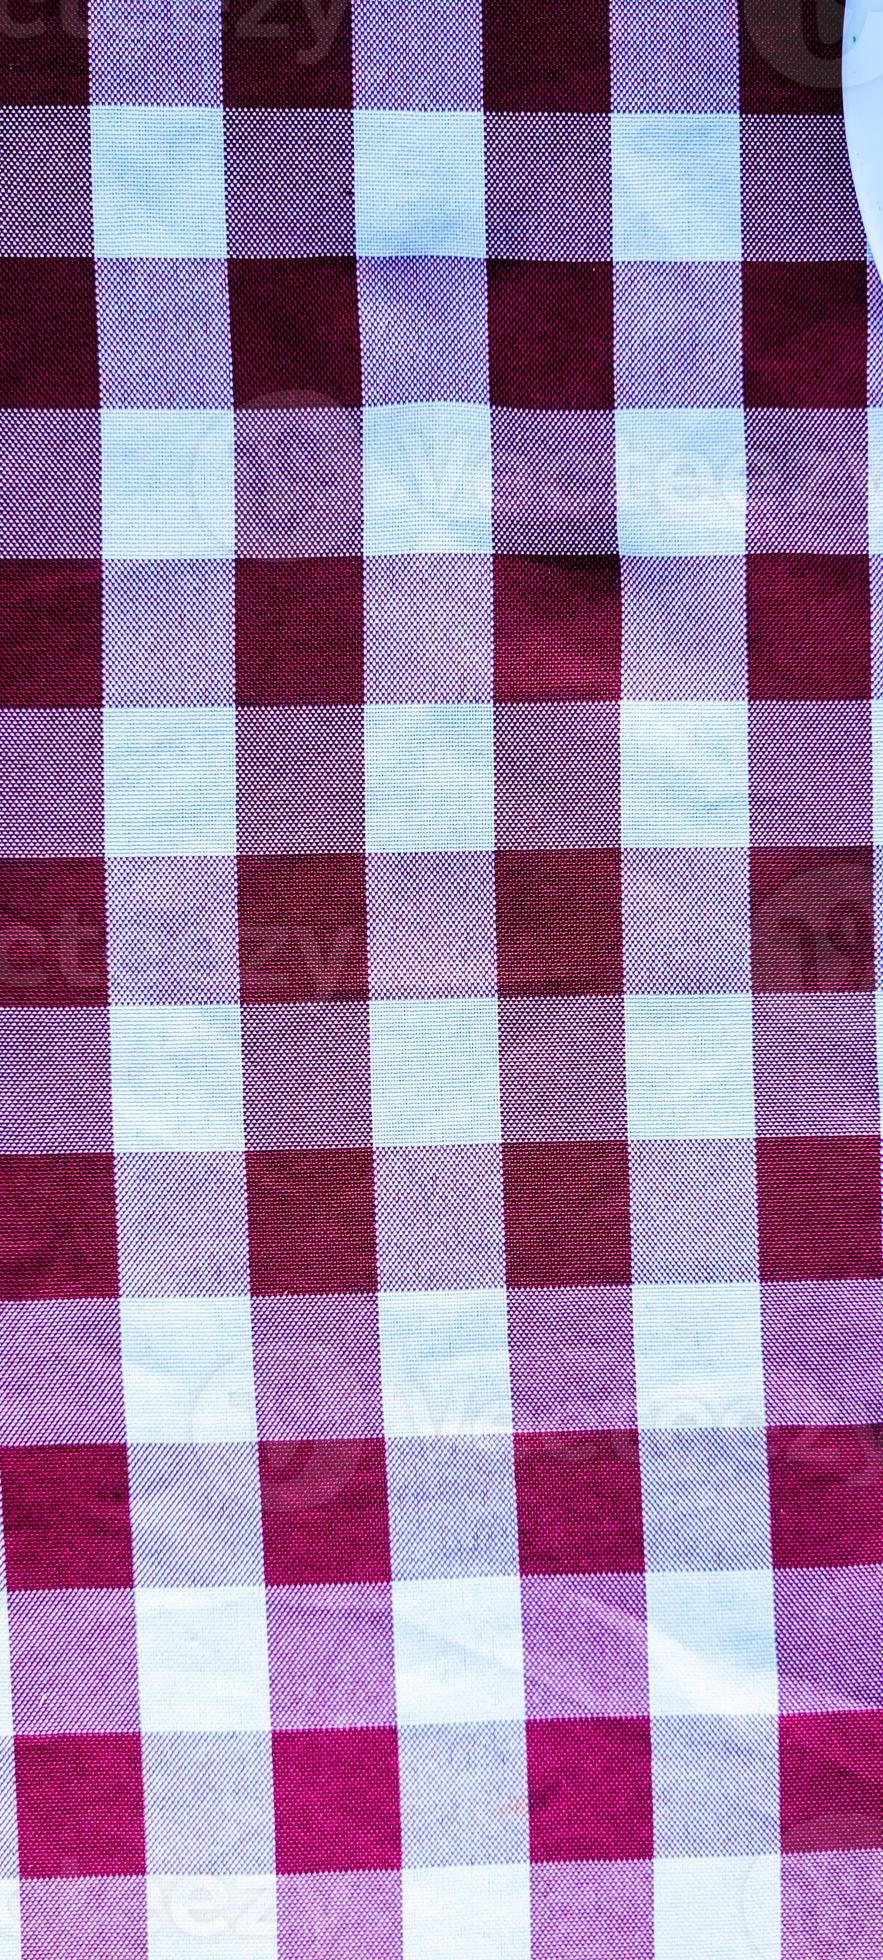 belofte vrijwilliger Gelijkmatig rood en wit geruit Italiaans picknick tafelkleed 14775960 Stockfoto